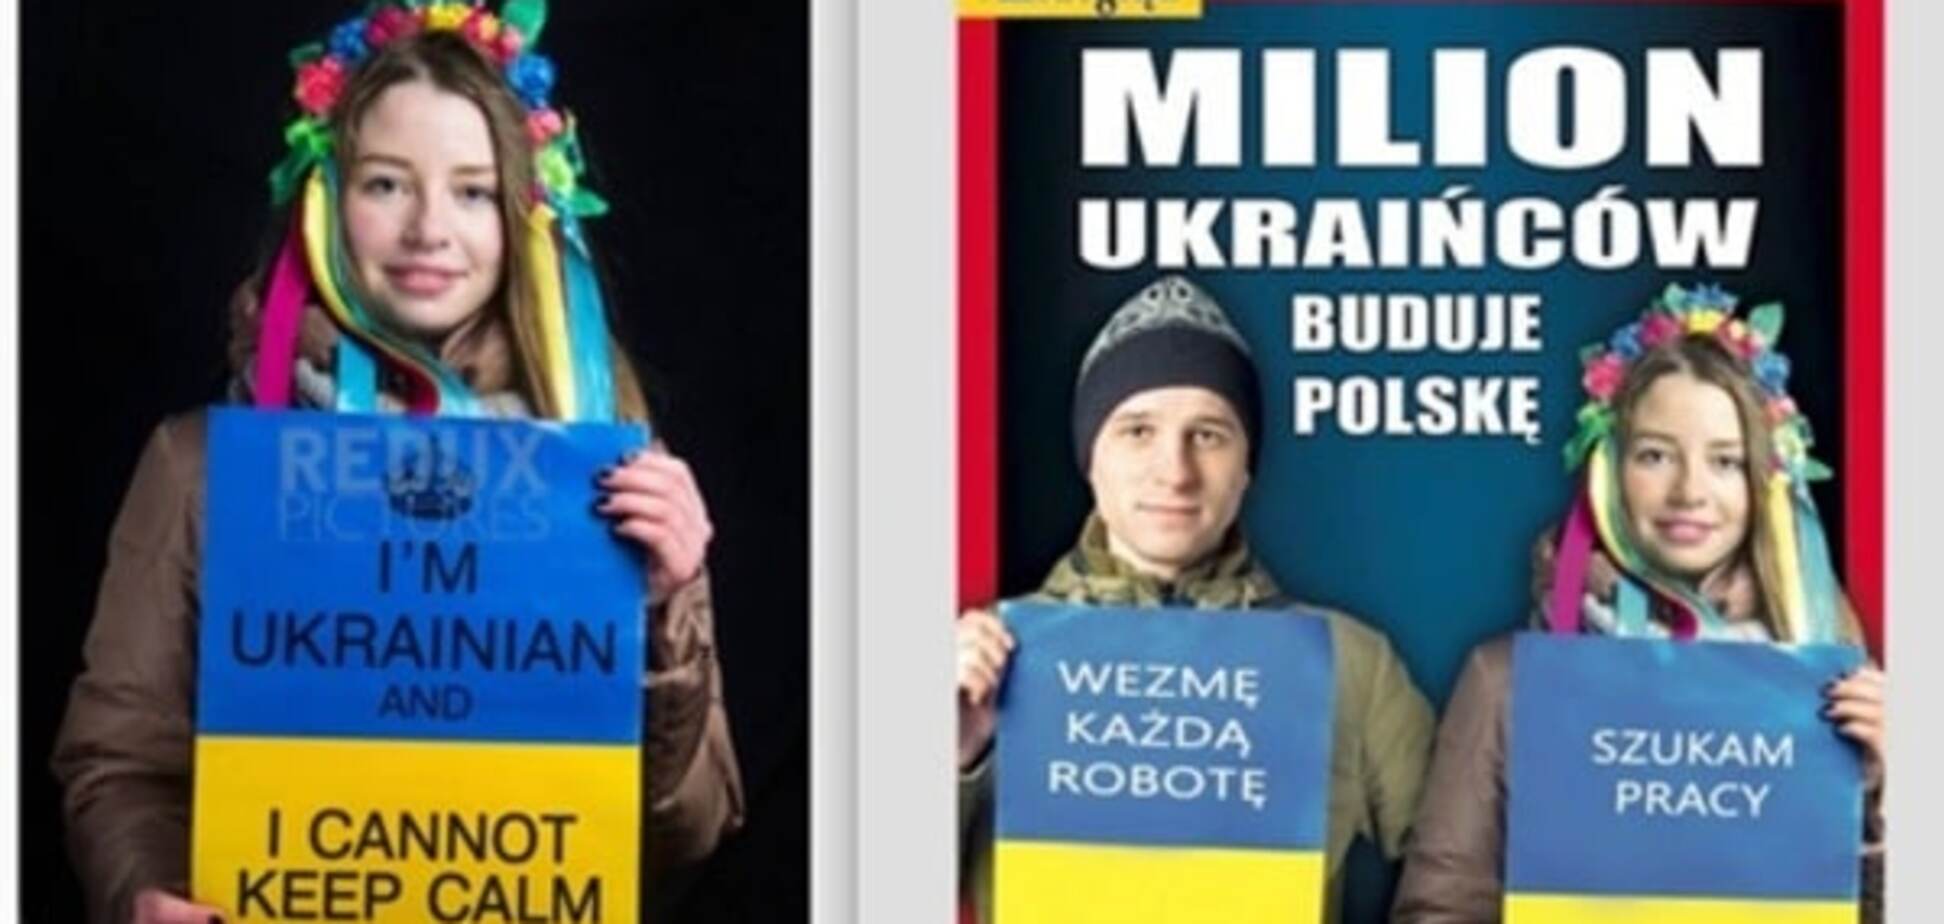 Скандал с евромайдановцами: в Польше журнал выставил активистов заробитчанами